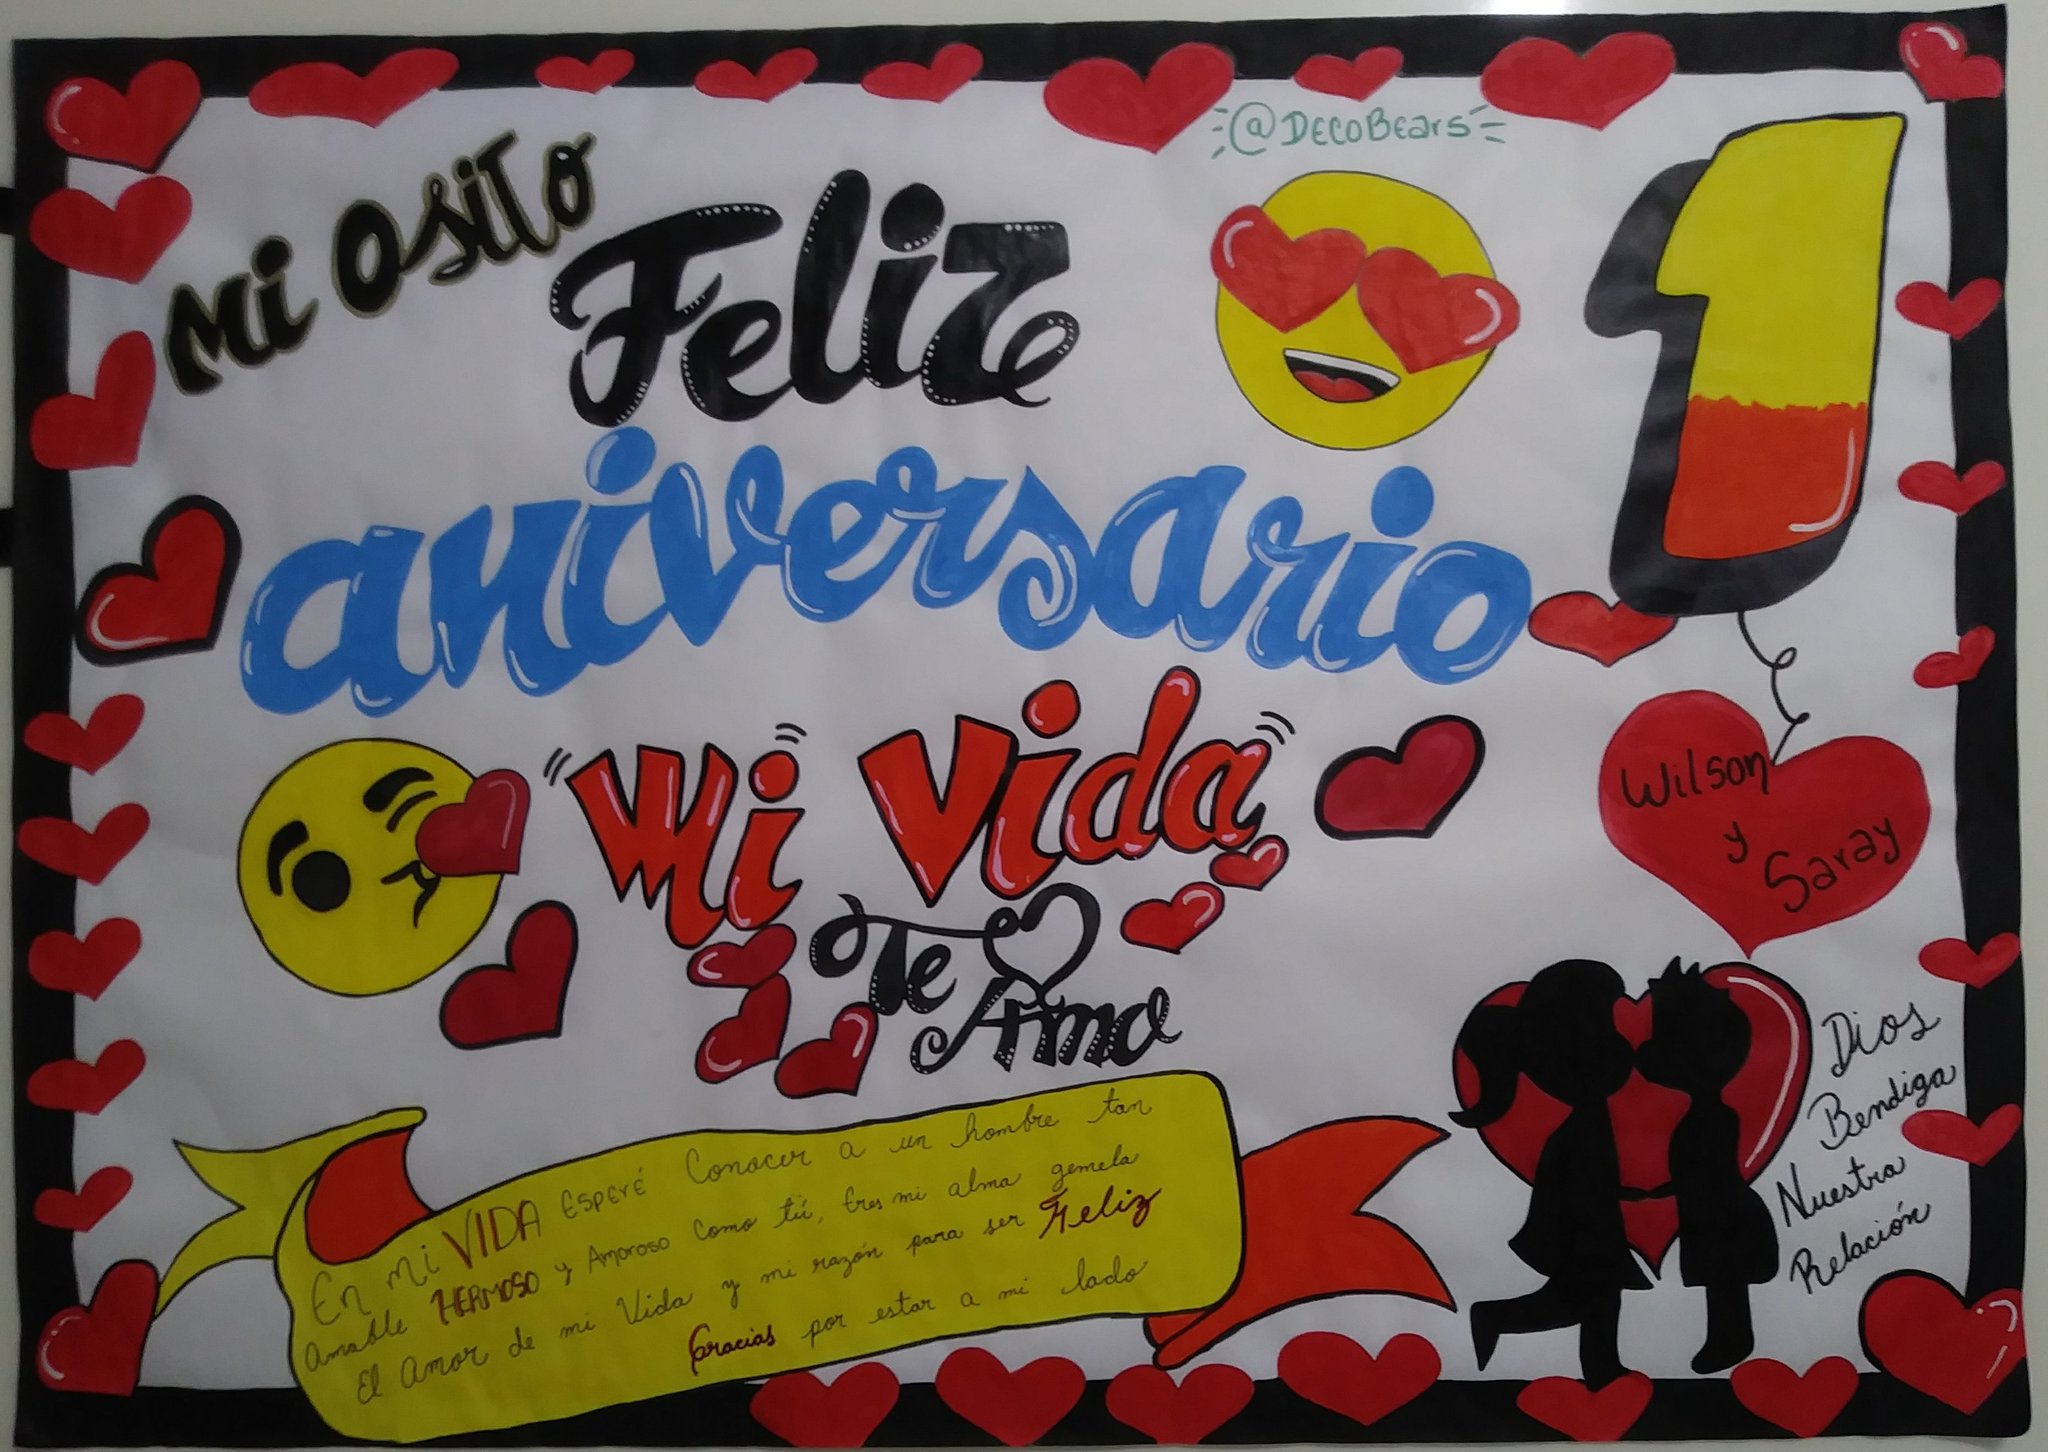 Joseph Banks dedo Torrente Twitter 上的 Deco Bear's："Feliz aniversario mi vida ❤😍 • Pancartas  personalizadas para ocasiones especiales. • #SanCristóbal #Táchira  #Detalles #Pancartas #Sorpresas #BabyShower #Graduación #Cumpleaños  #Regalos #Amor #Aniversario #CumpleMes https ...